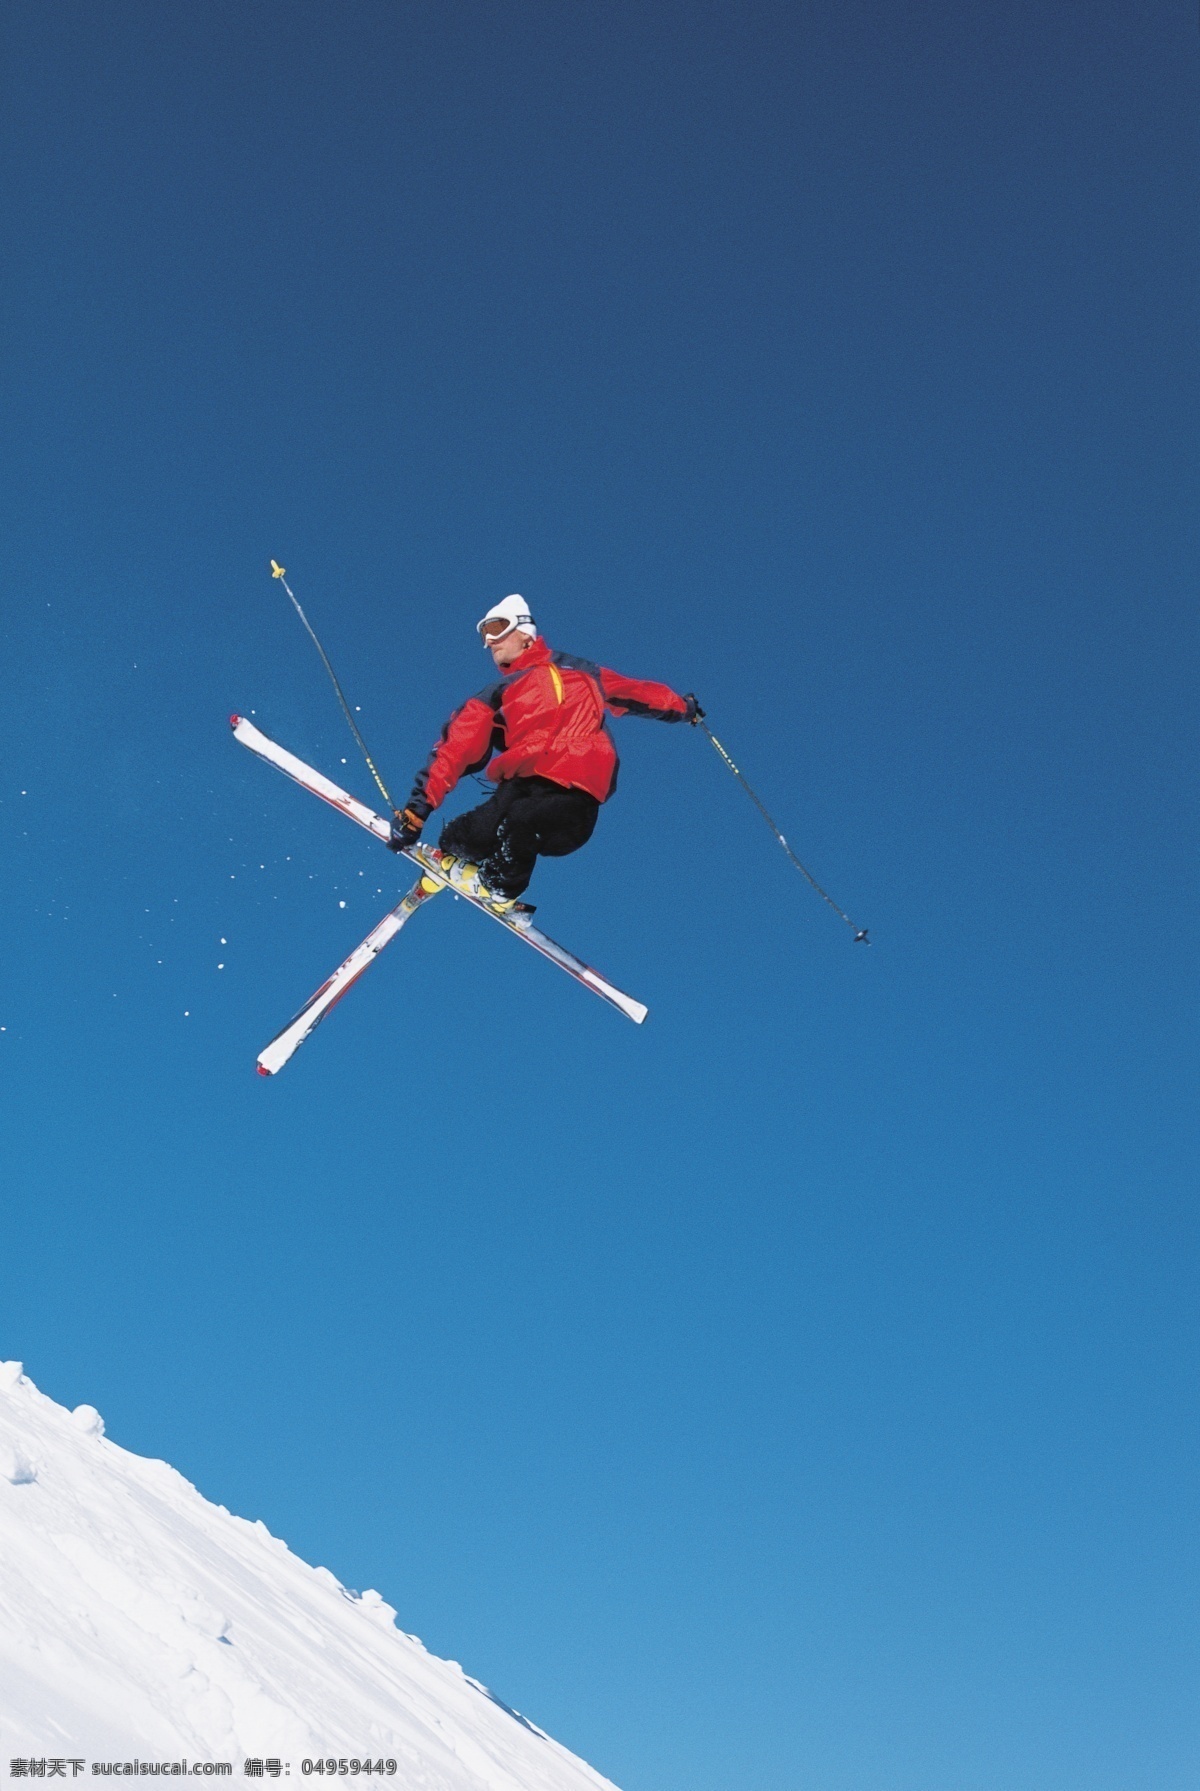 高山 划 雪 摄影图片 雪地运动 雪地 运动 划雪 精彩 冬天 高山划雪 高山划雪运动 极限运动 运动图片 生活百科 体育运动